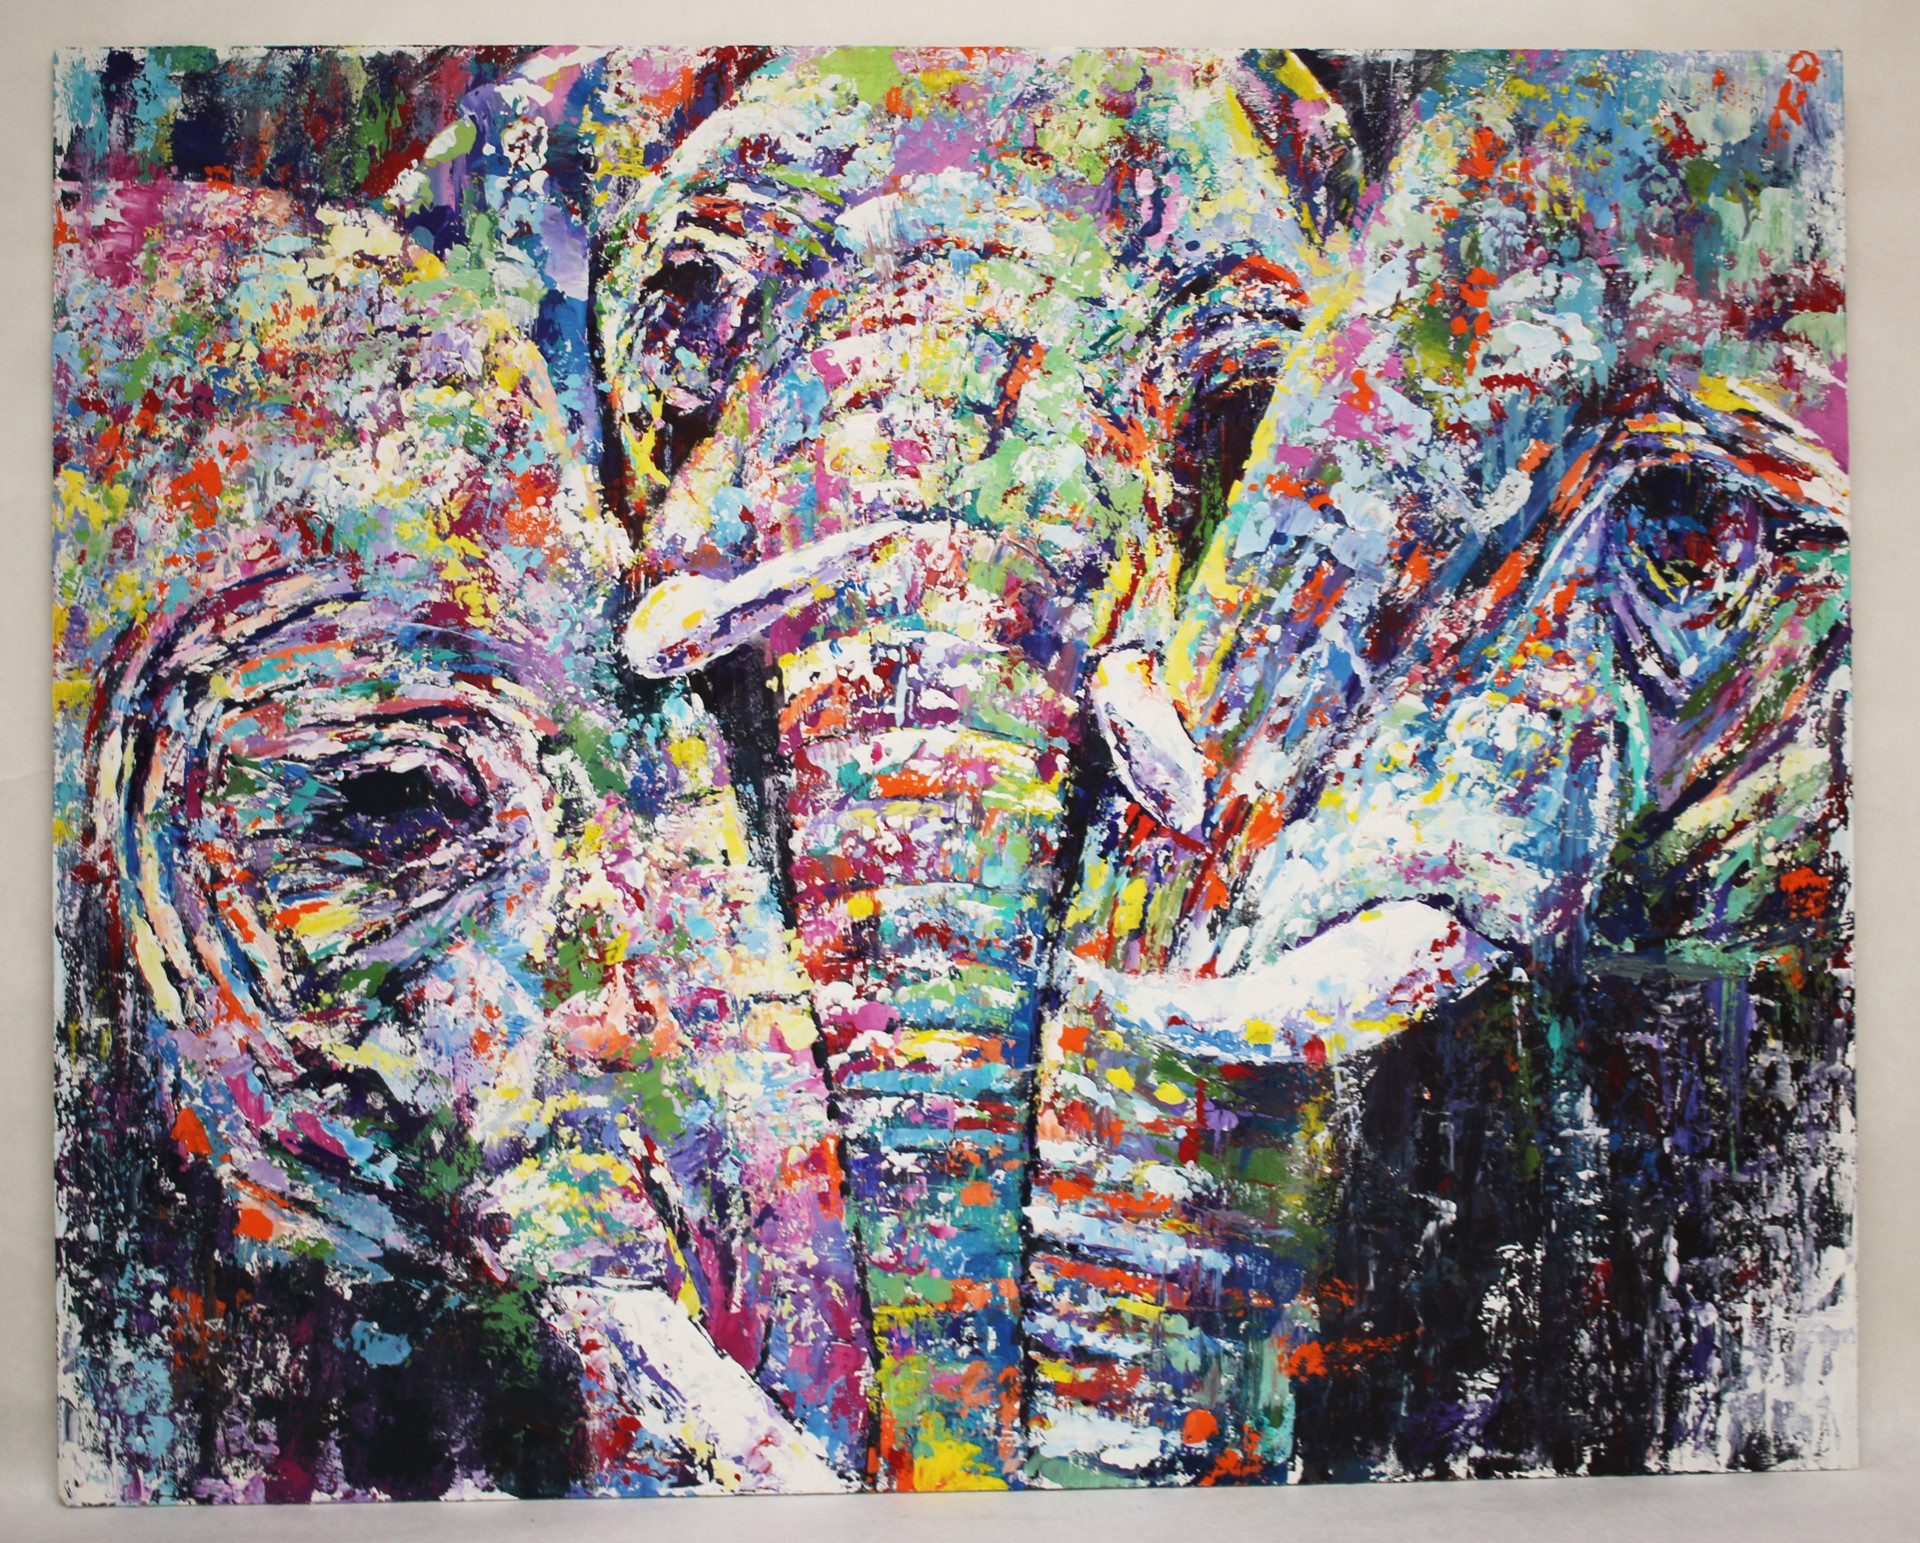 Family (The Elephant) by Sullivan